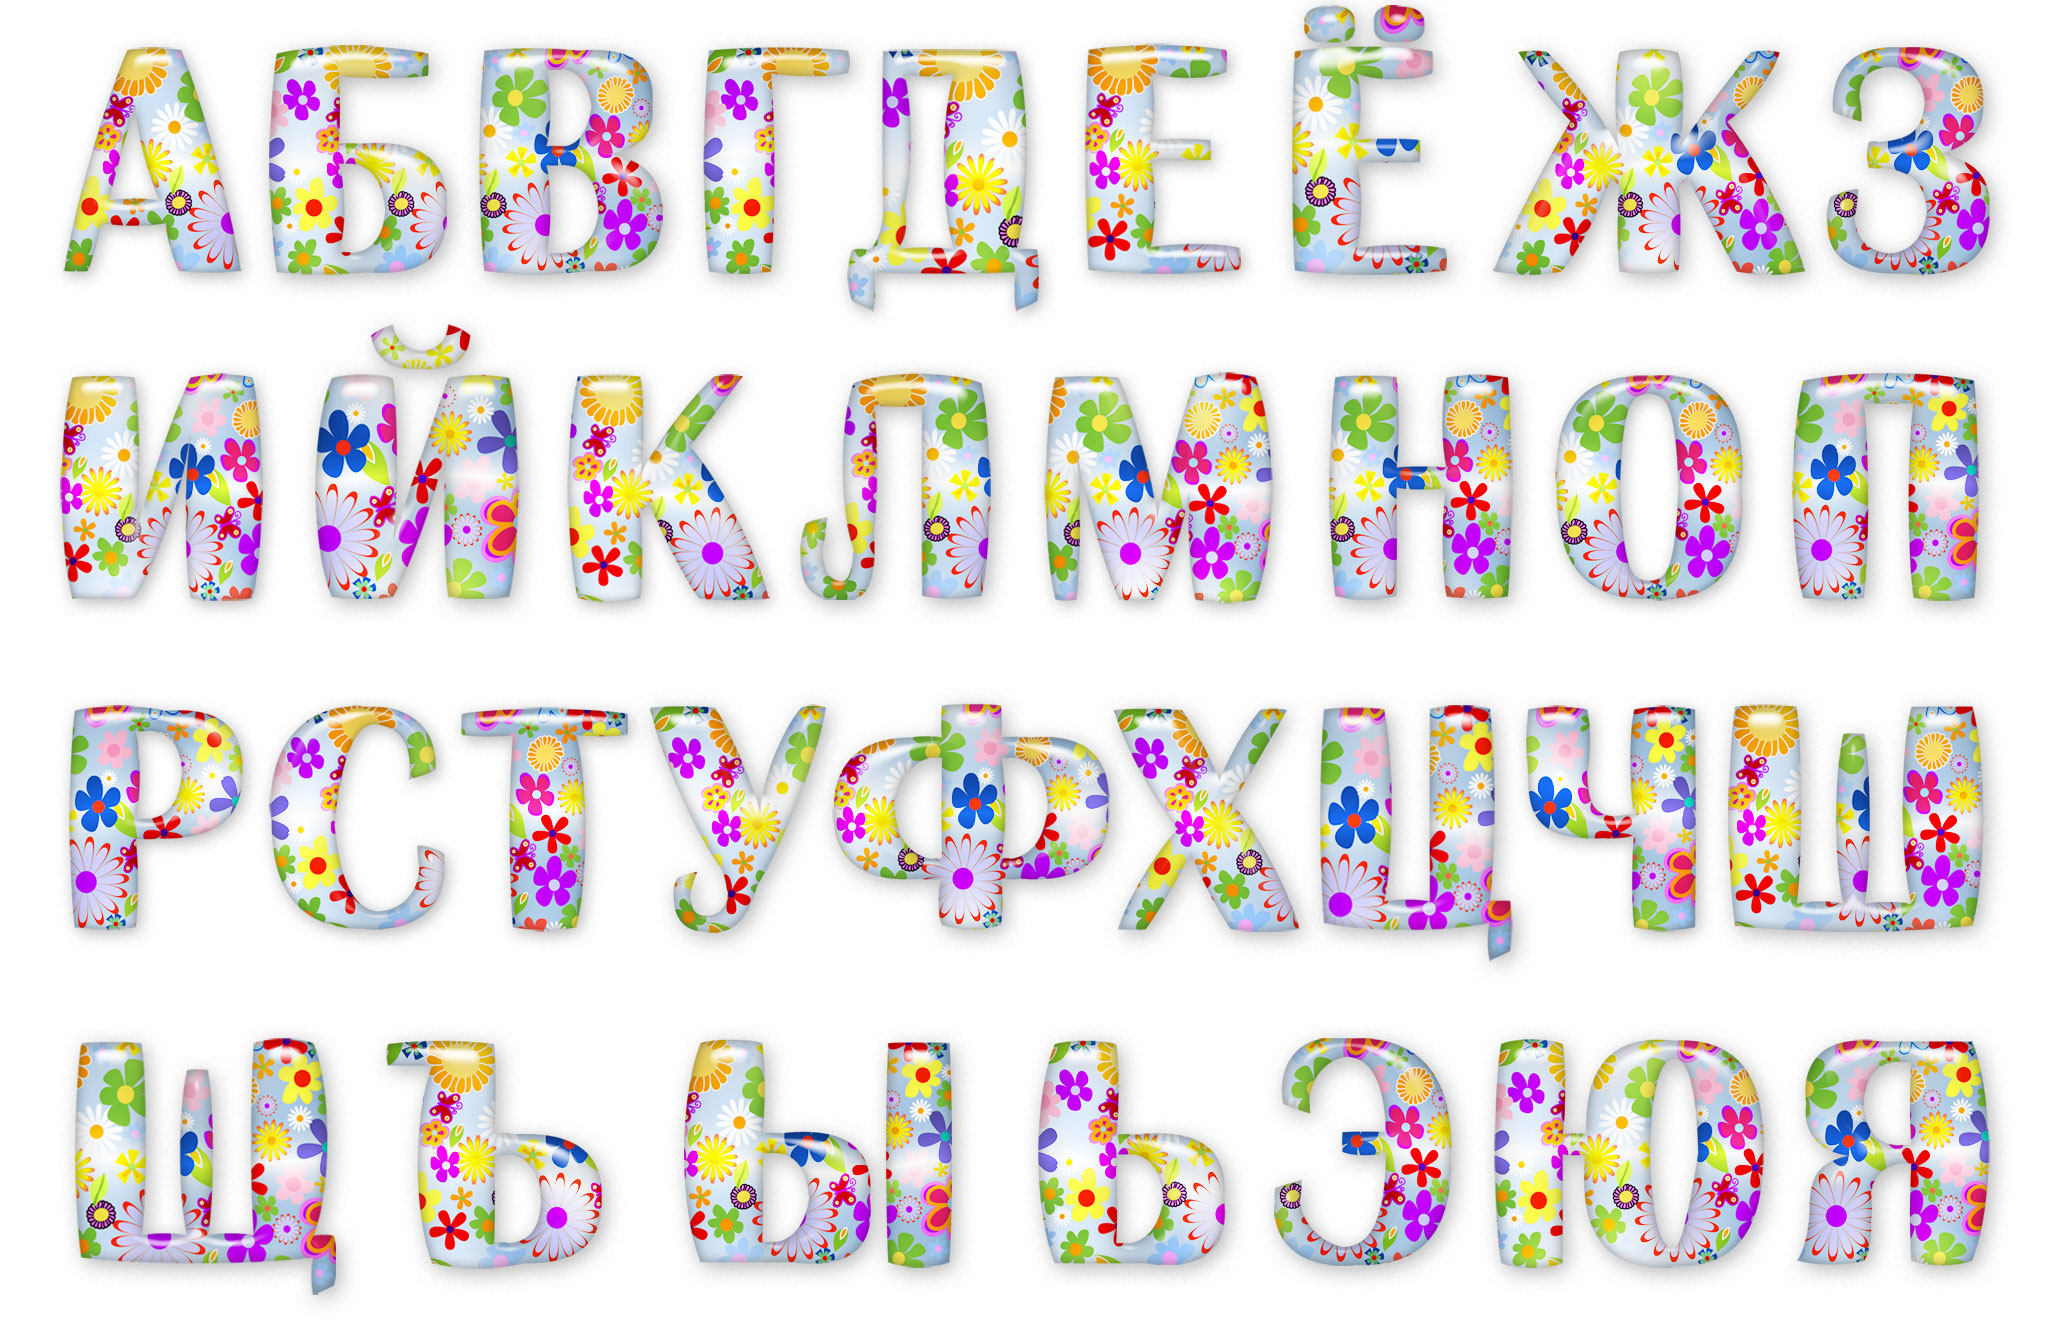 Буквы алфавита нарисовать красивые русского